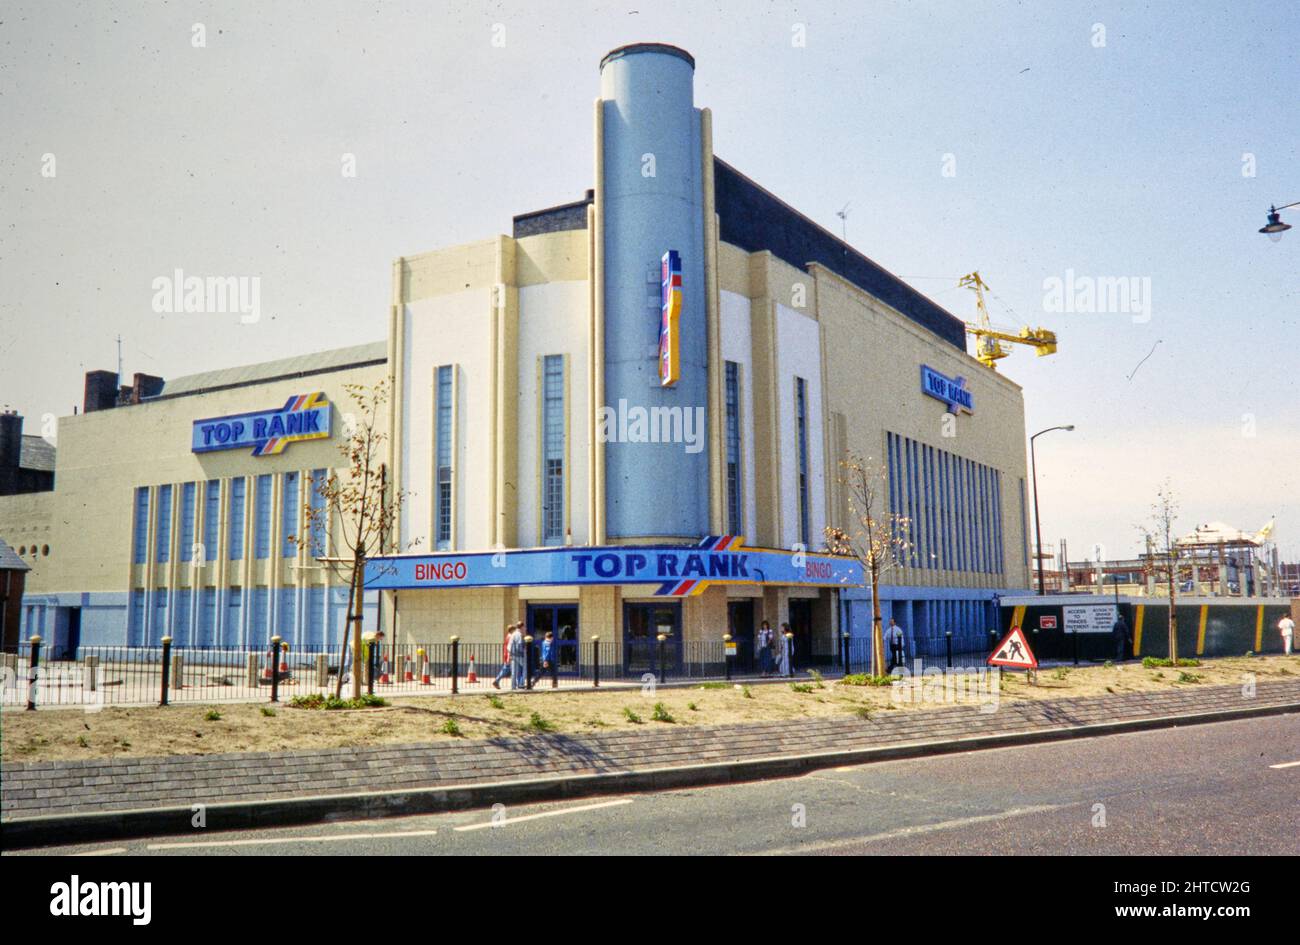 Top Rank Bingo Club, Claughton Road, Birkenhead, Wirral, 1990-1997. Il Top Rank Bingo Club visto da nord-est. Il Ritz Cinema è stato inaugurato nel 1937. Fu danneggiata dai bombardamenti della seconda guerra mondiale e riaperta nel 1947 dopo lavori di ristrutturazione. L'originale organo Compton fu sostituito da un organo Christie del Cinema la Scala di Glasgow. Il cinema fu poi rinominato Essoldo Cinema. Ha chiuso nel 1969 e divenne un club di bingo, che ha chiuso nel 1997. L'edificio fu successivamente demolito. Foto Stock